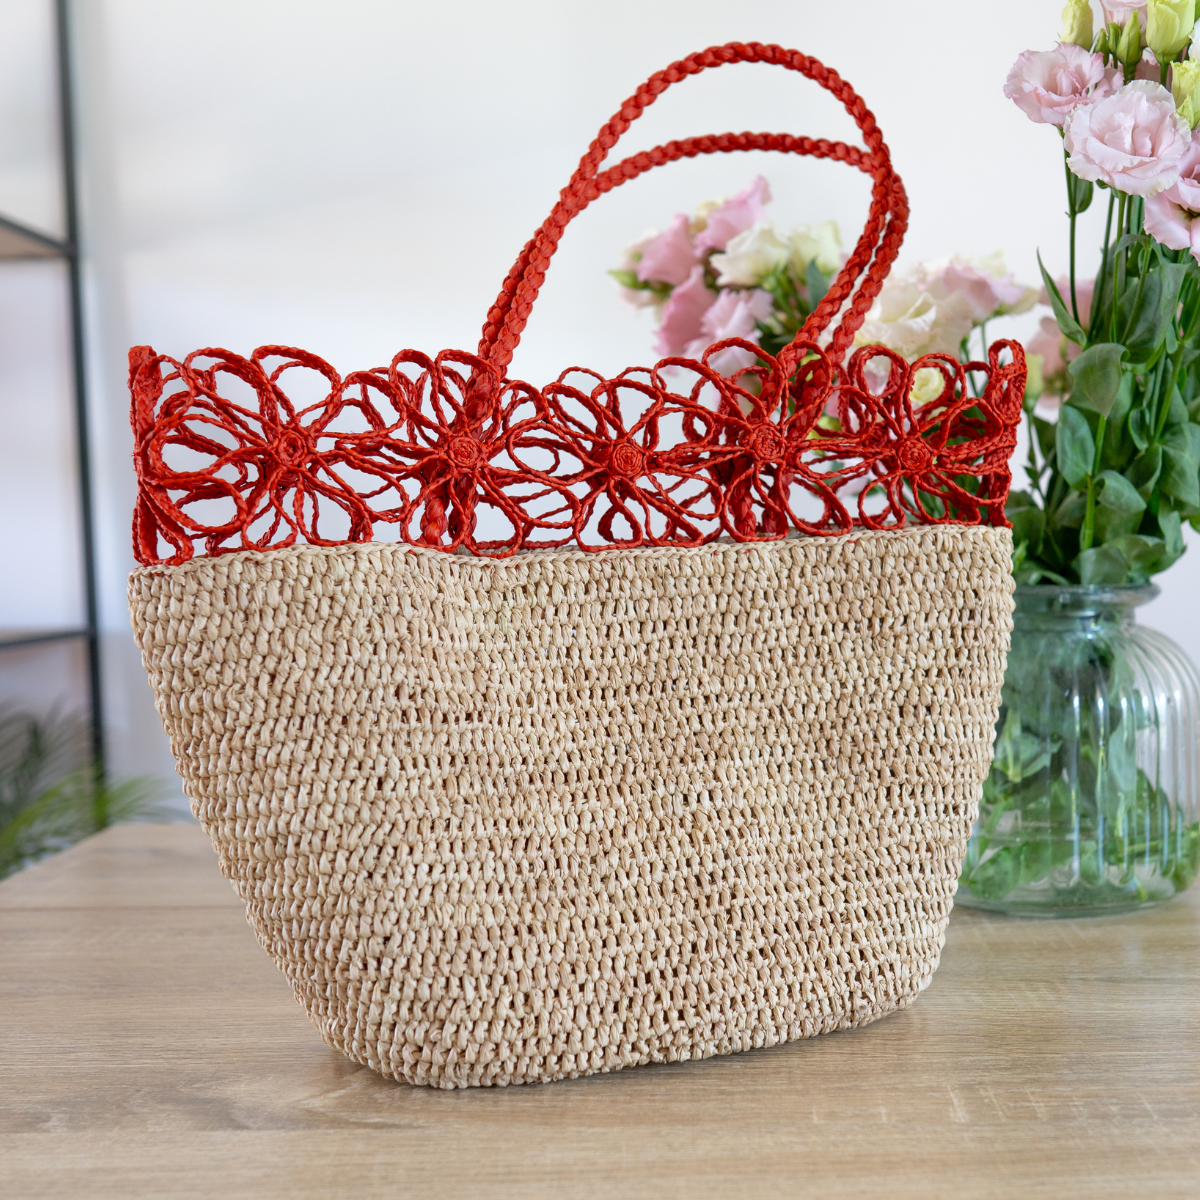 Le sac Éclat de Corail est l'accessoire parfait pour ajouter une touche de style bohème et estival à votre garde-robe.